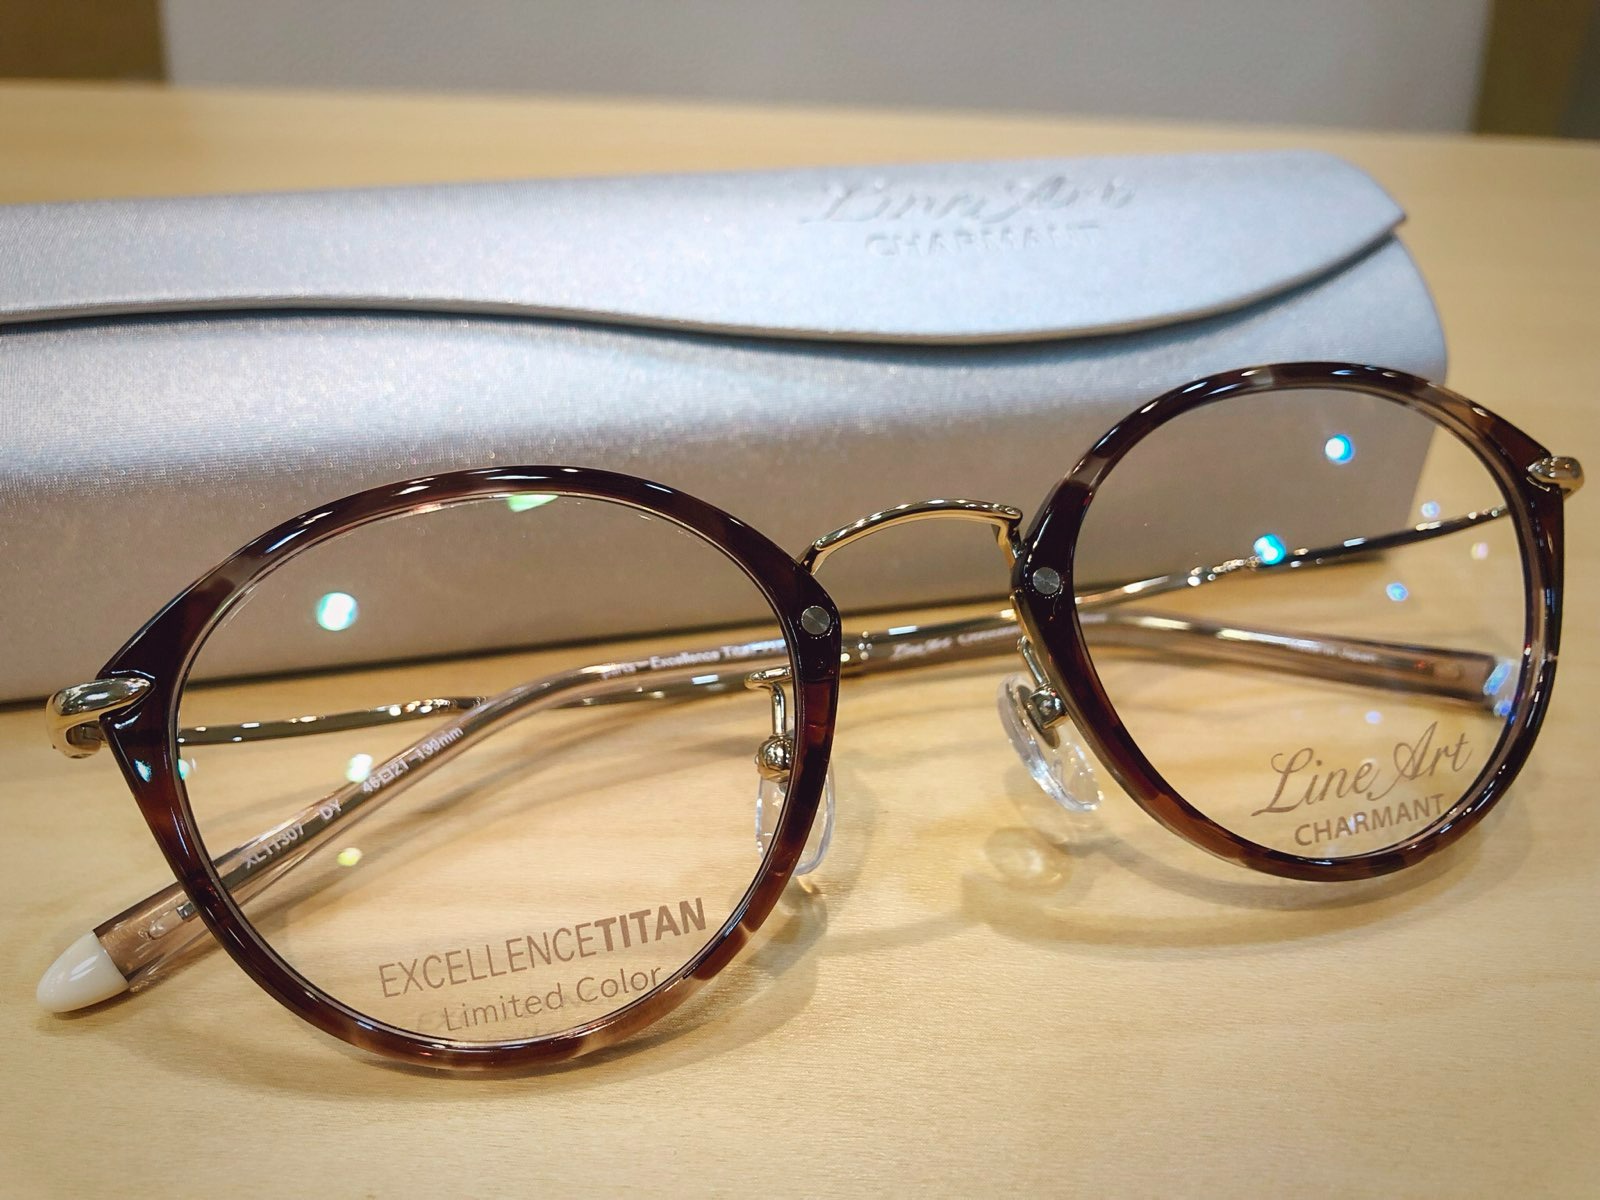 ラインアートXL11307優しさと強い意志を感じる女性メガネです。 | 飯塚 田川のメガネ店 メガネのサトー